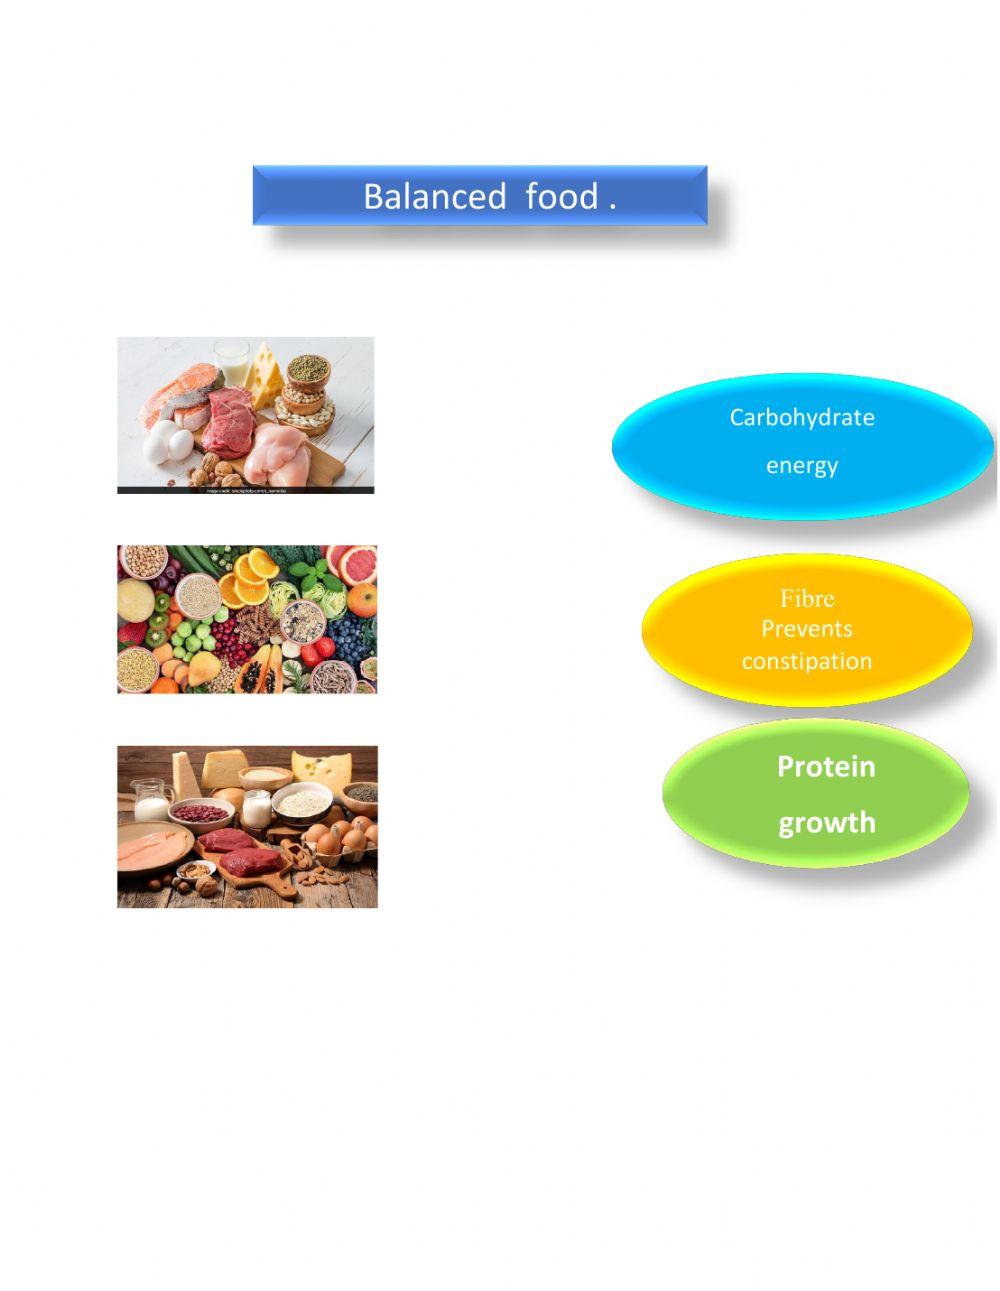 Balanced food